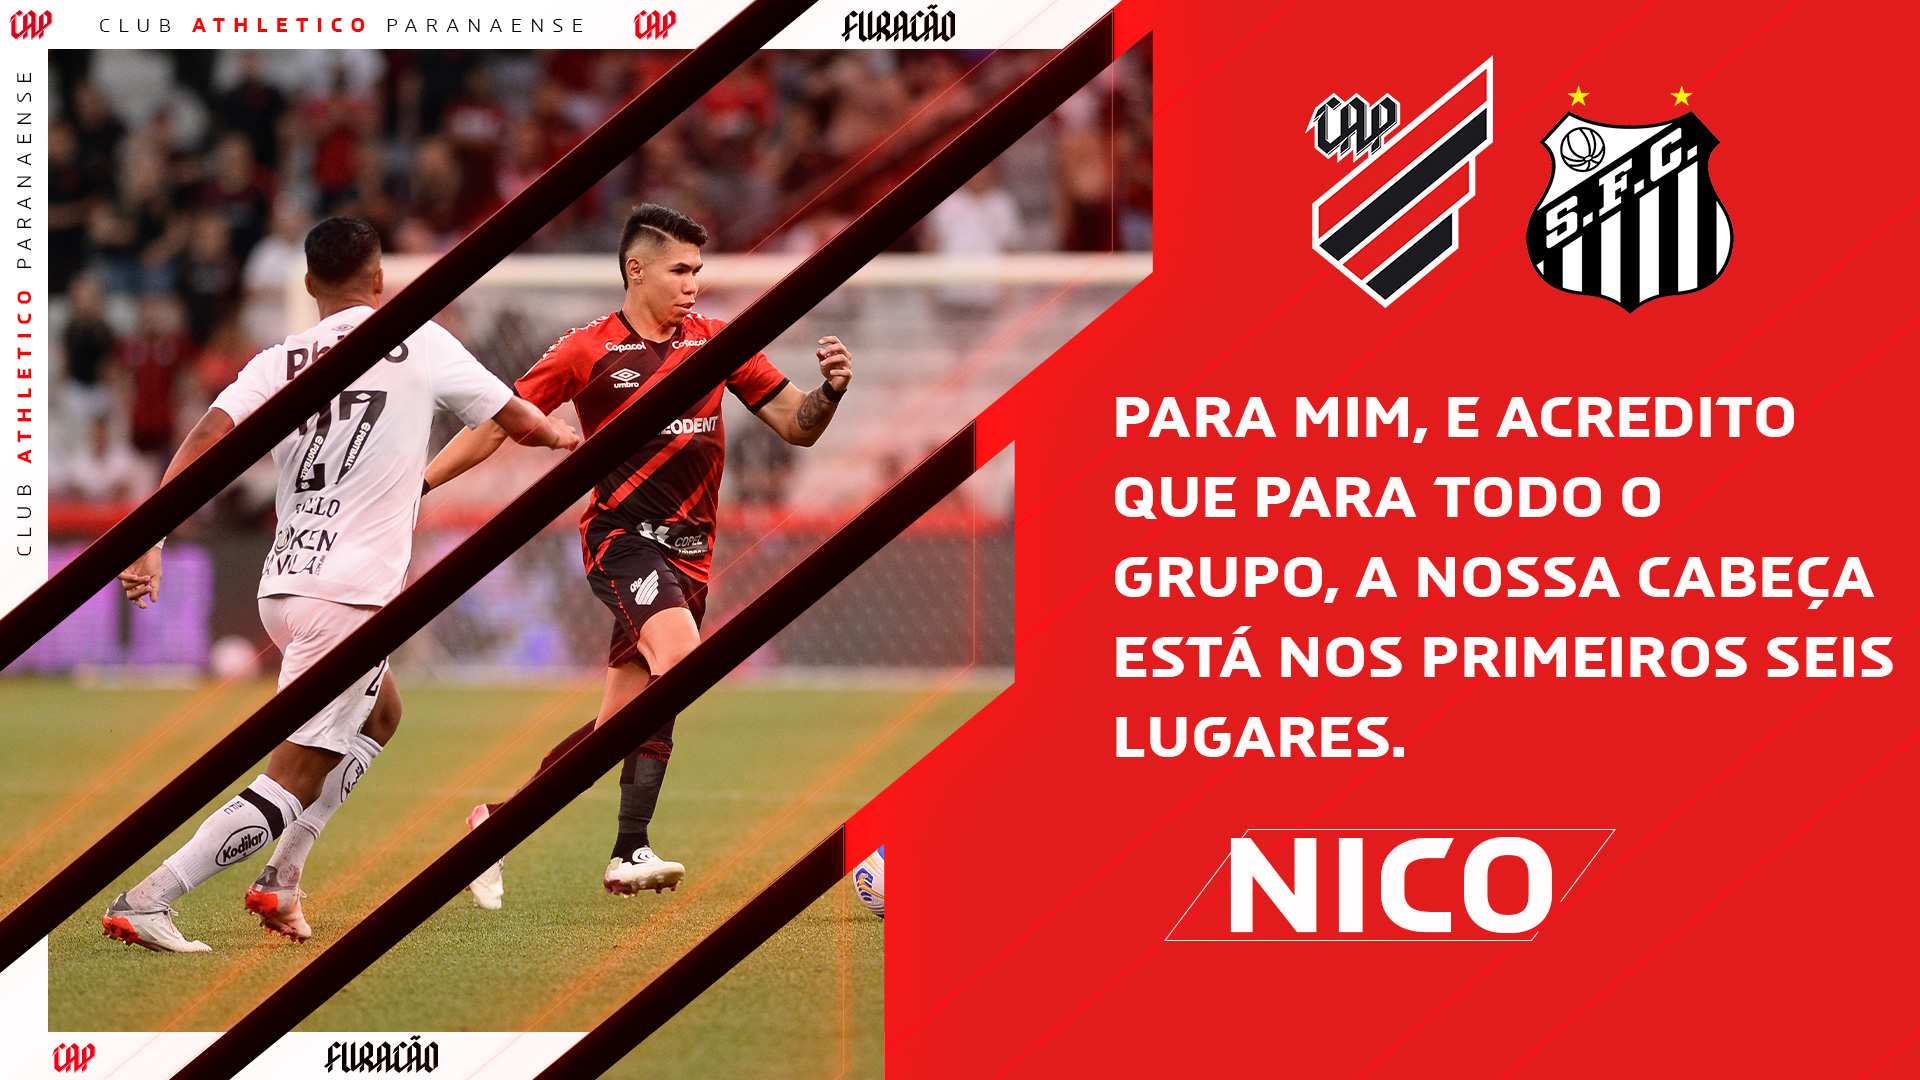 Nico Hernández: "A nossa cabeça está nos primeiros seis lugares."